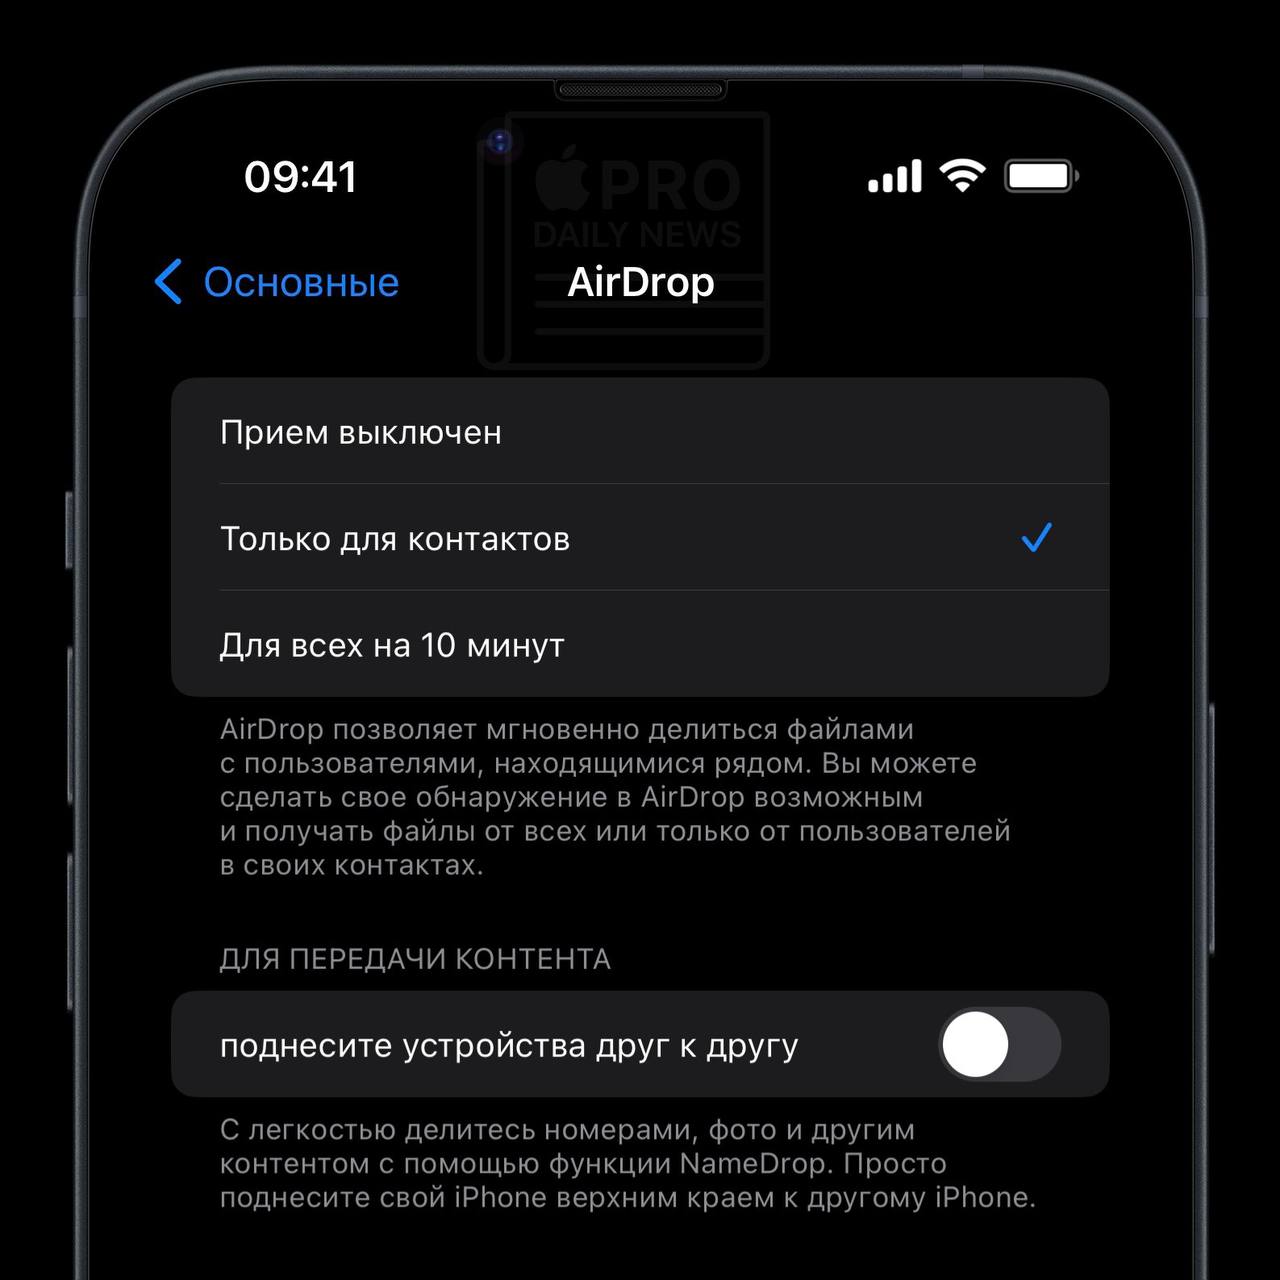 AirDrop: Переключатель для активации передачи контента при поднесении одного iPhone к другому